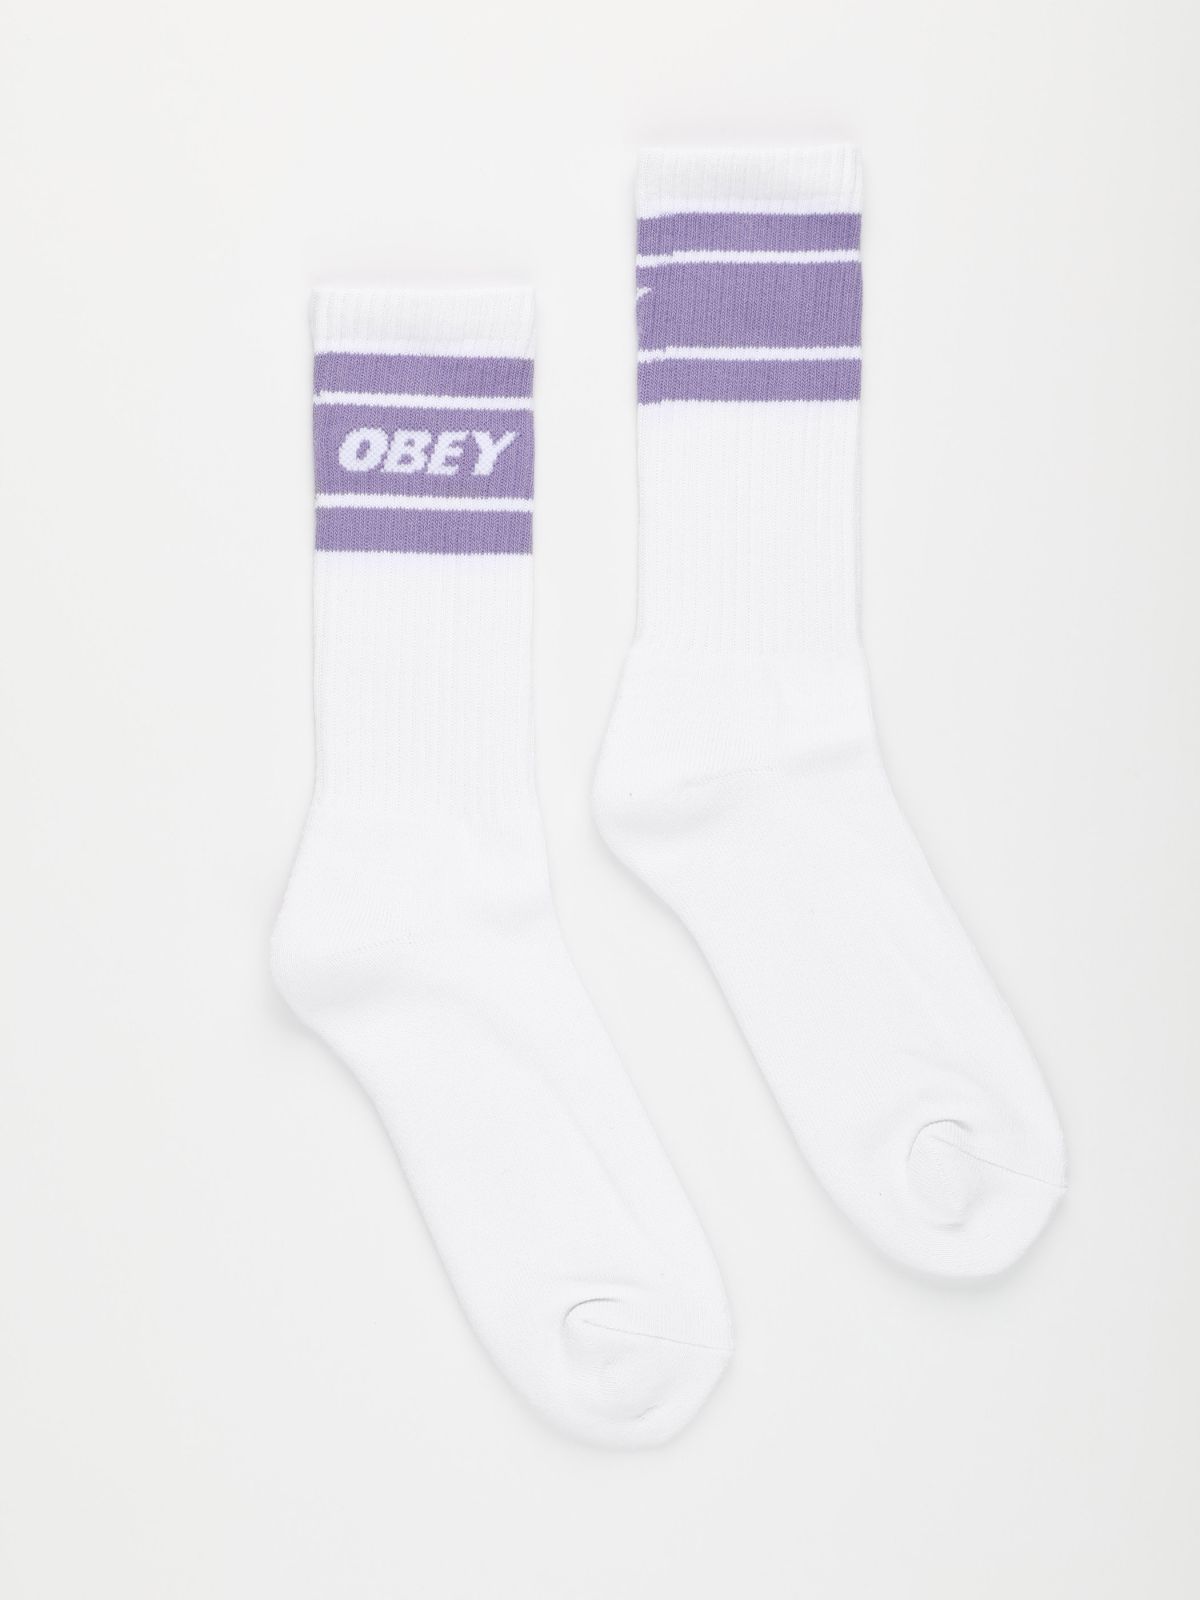  גרביים גבוהים עם לוגו / גברים של OBEY